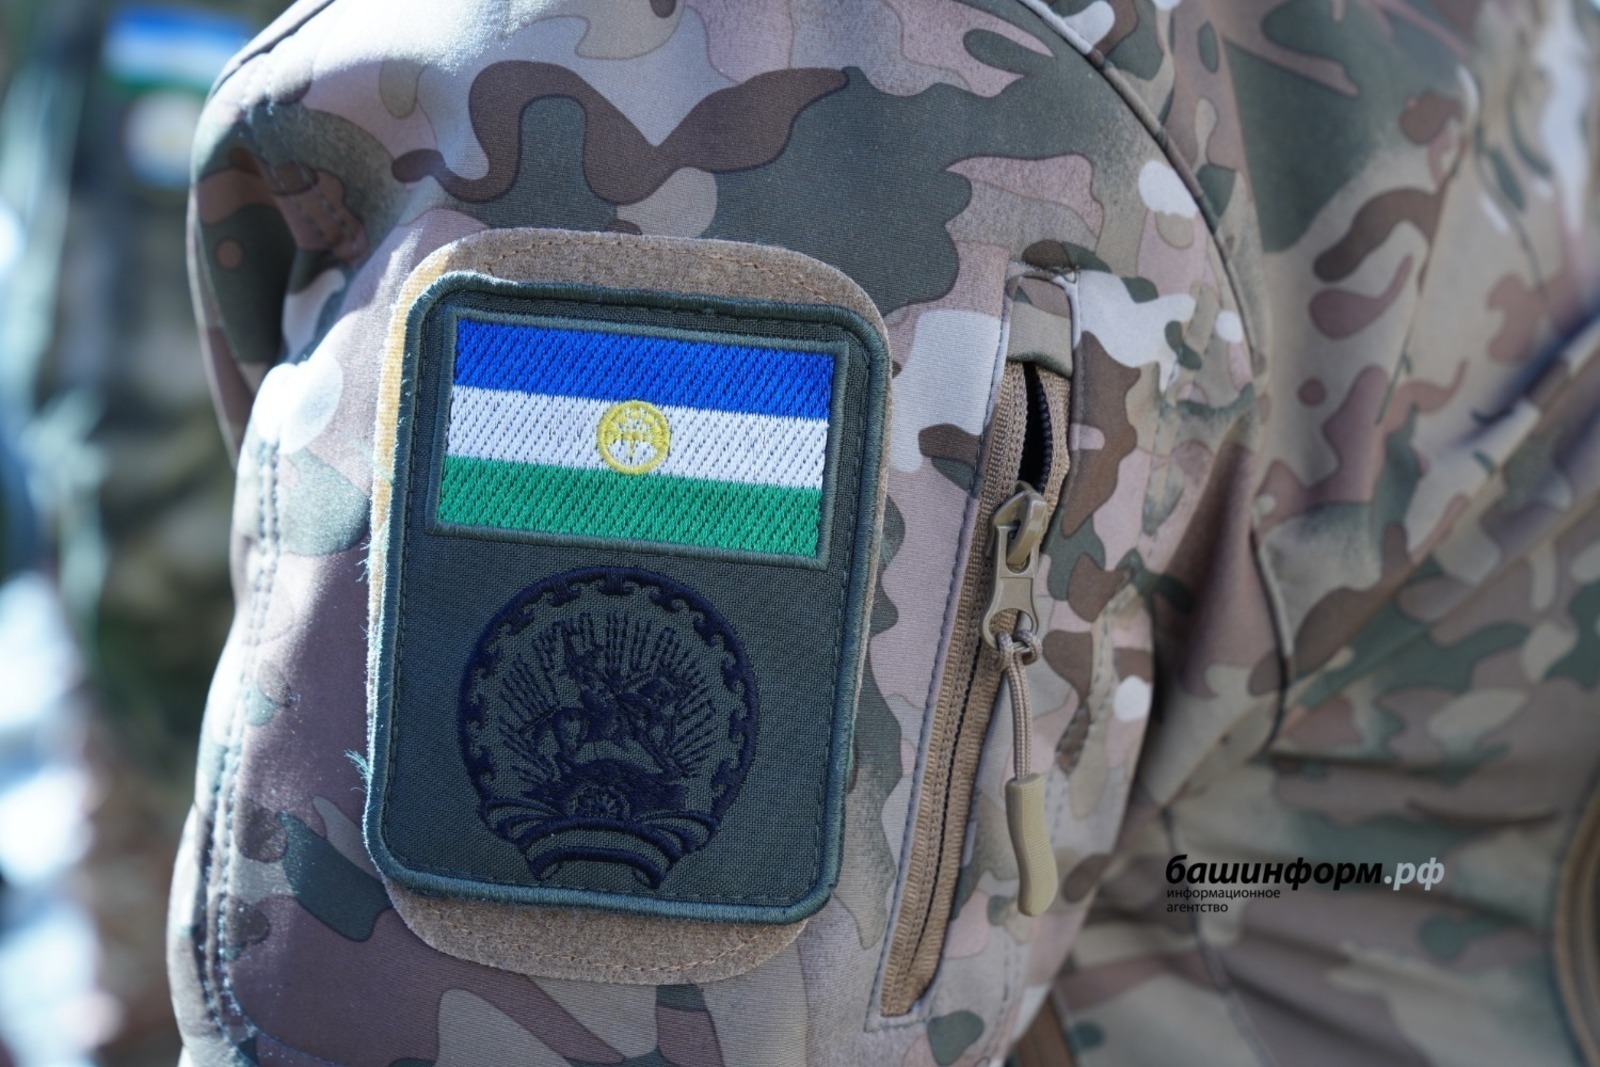 Более 600 жителей Башкирии пополнят ряды новых добровольческих батальонов